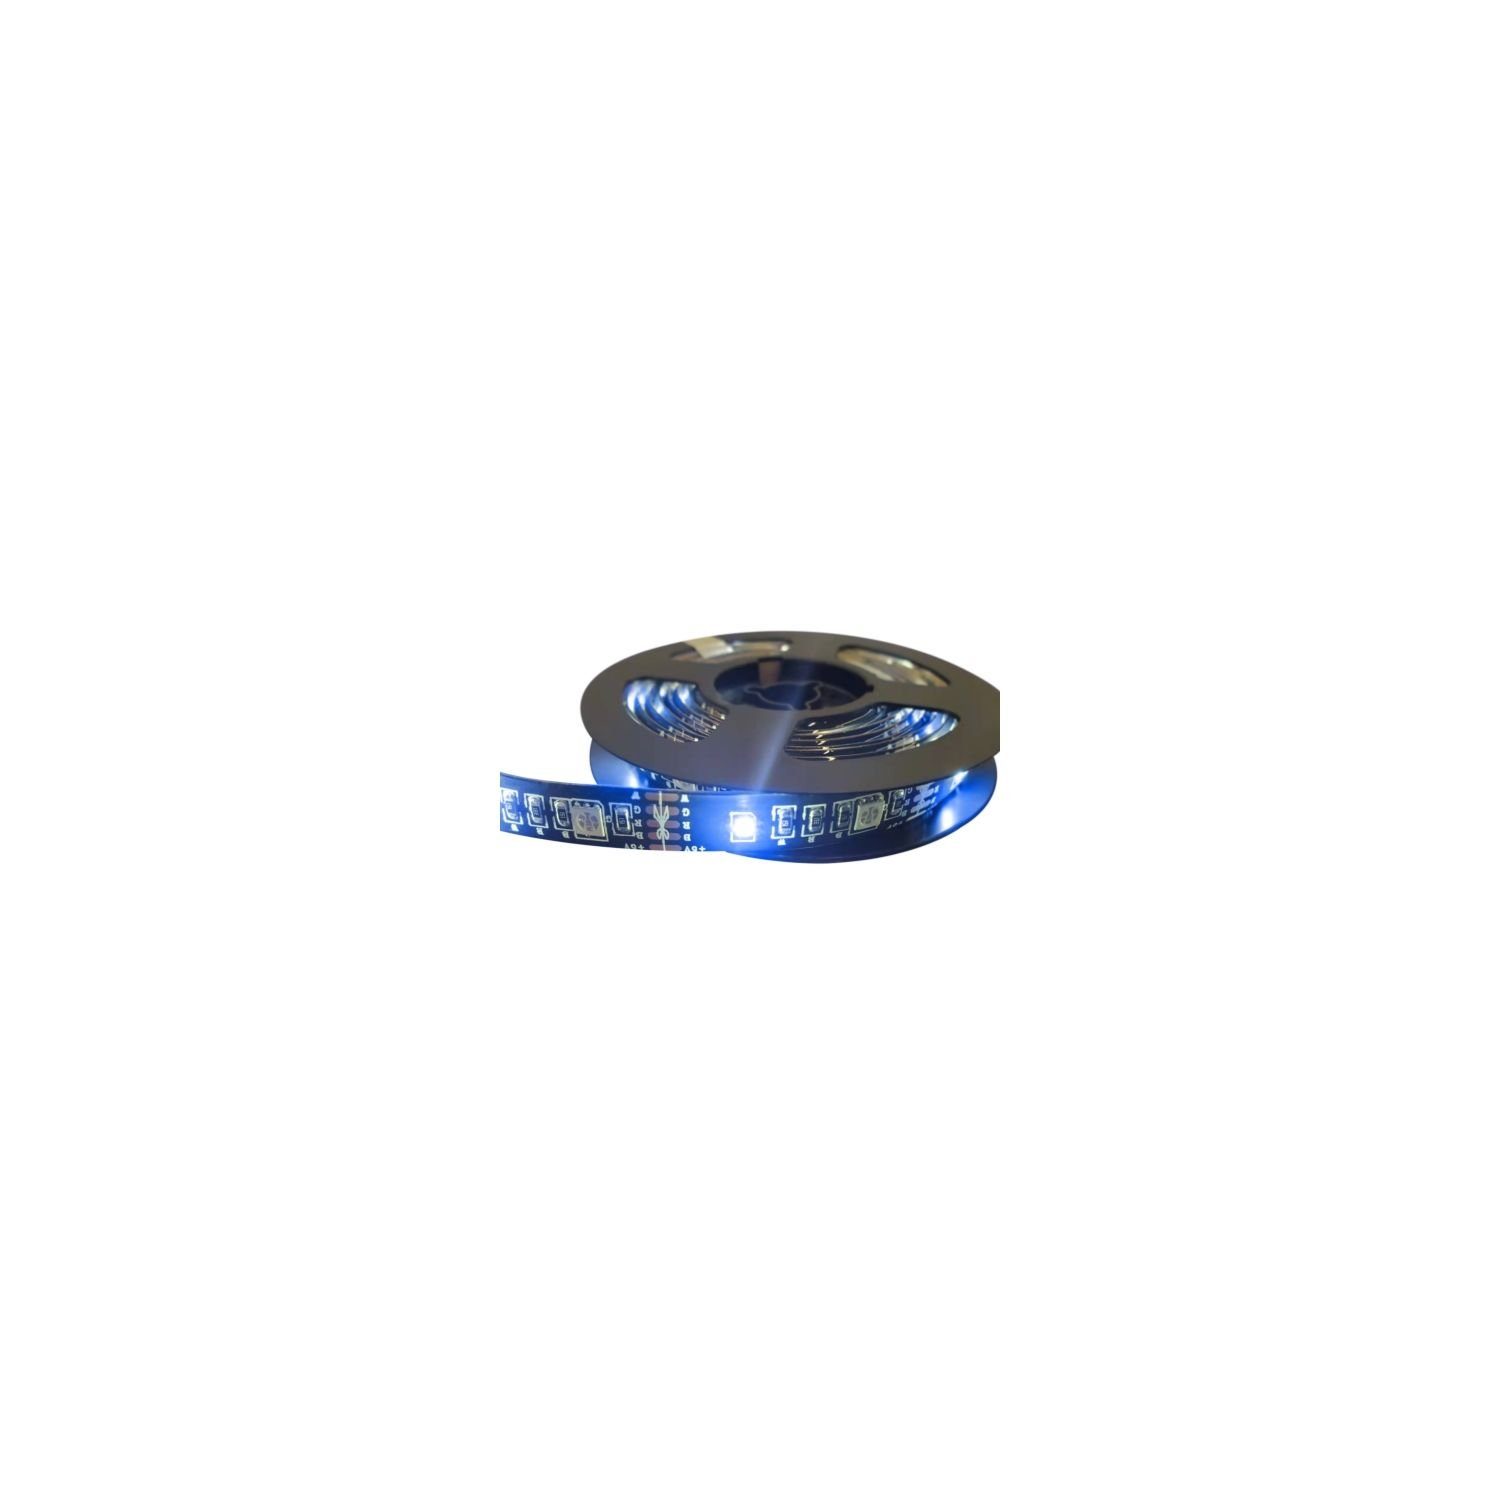 DELTACO LED-Streifen SH-LS2MUSB Smarter USB LED Lichtstreifen/LED Strip RGB 2m, über Bluetooth, schneidbar